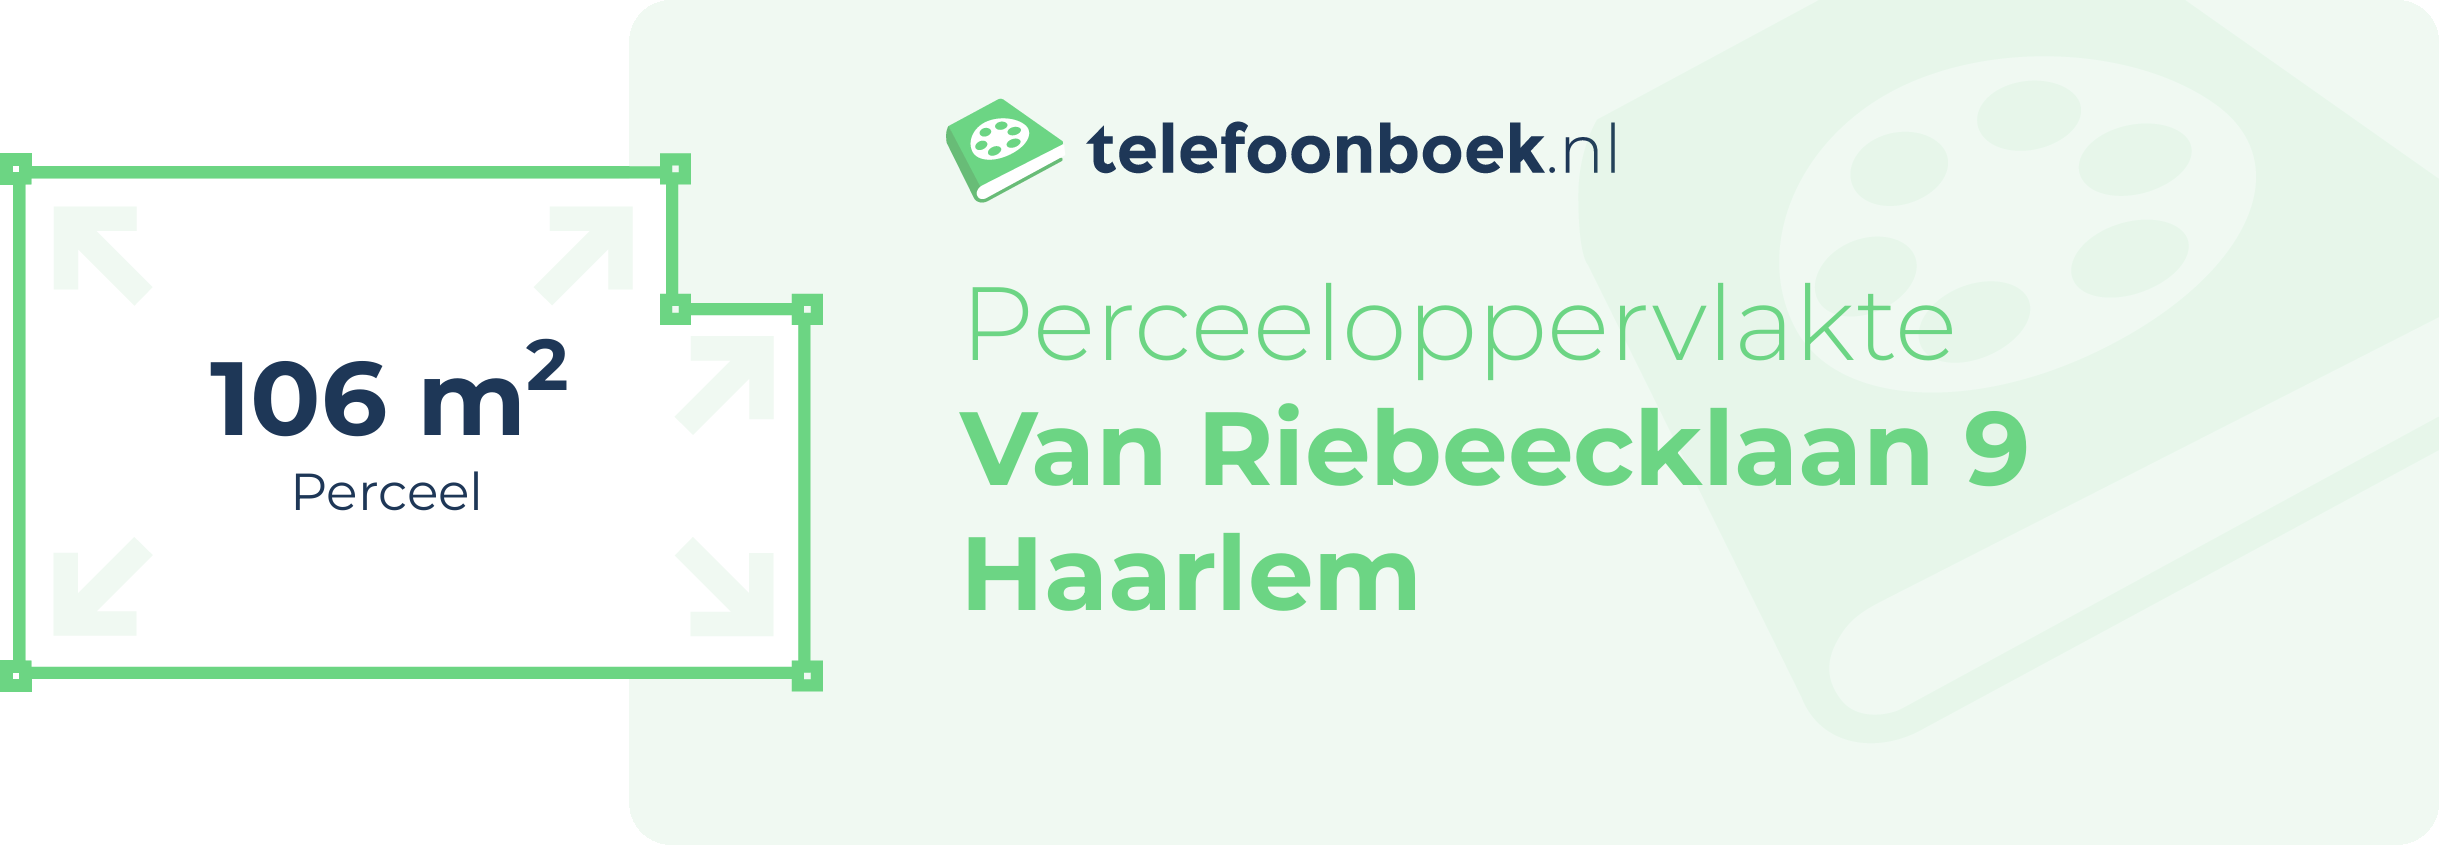 Perceeloppervlakte Van Riebeecklaan 9 Haarlem